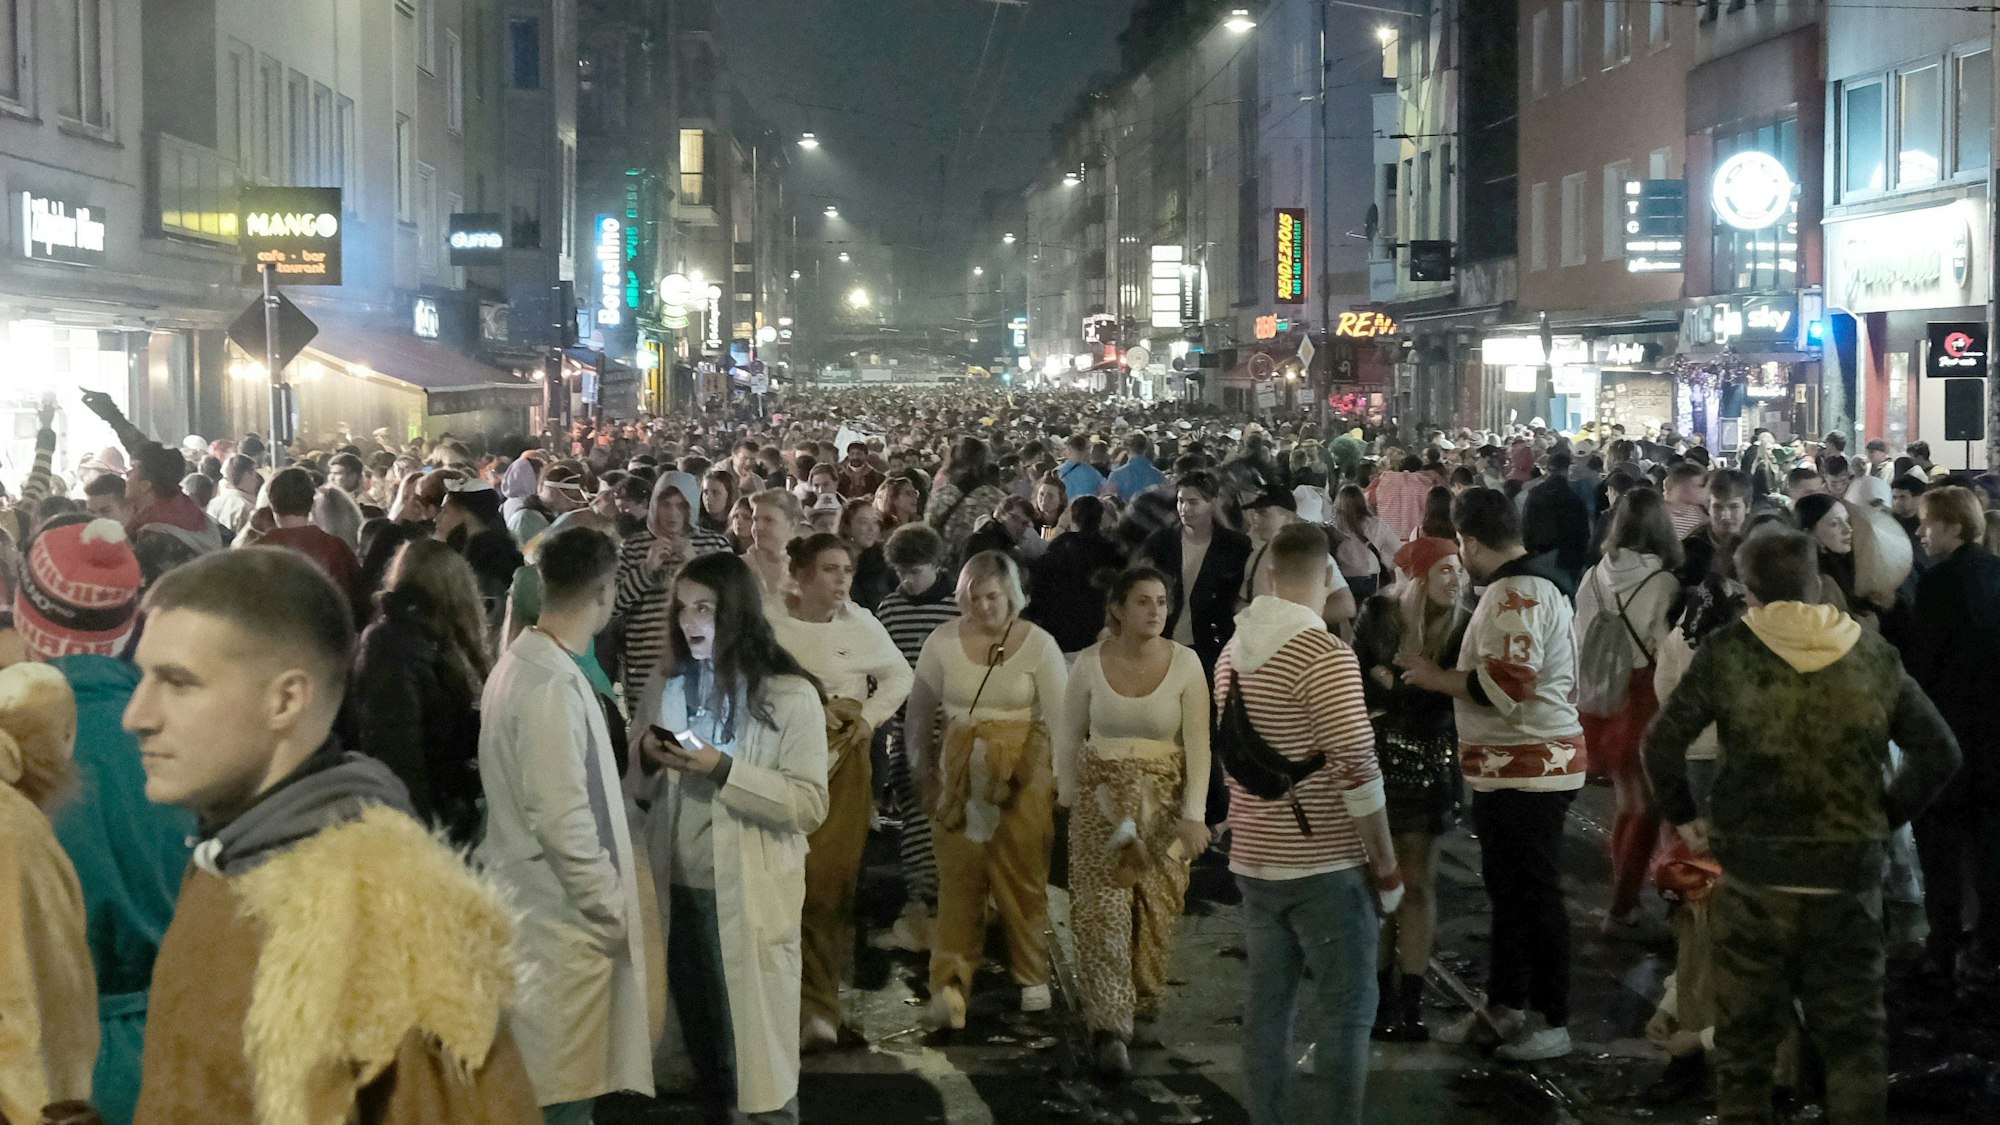 Jecke feiern am 11. November 2021 auf der Zülpicher Straße. Jetzt gibt es Kritik am Sicherheitskonzept. Vor allem geht es um den Zugang zur Party-Zone.
